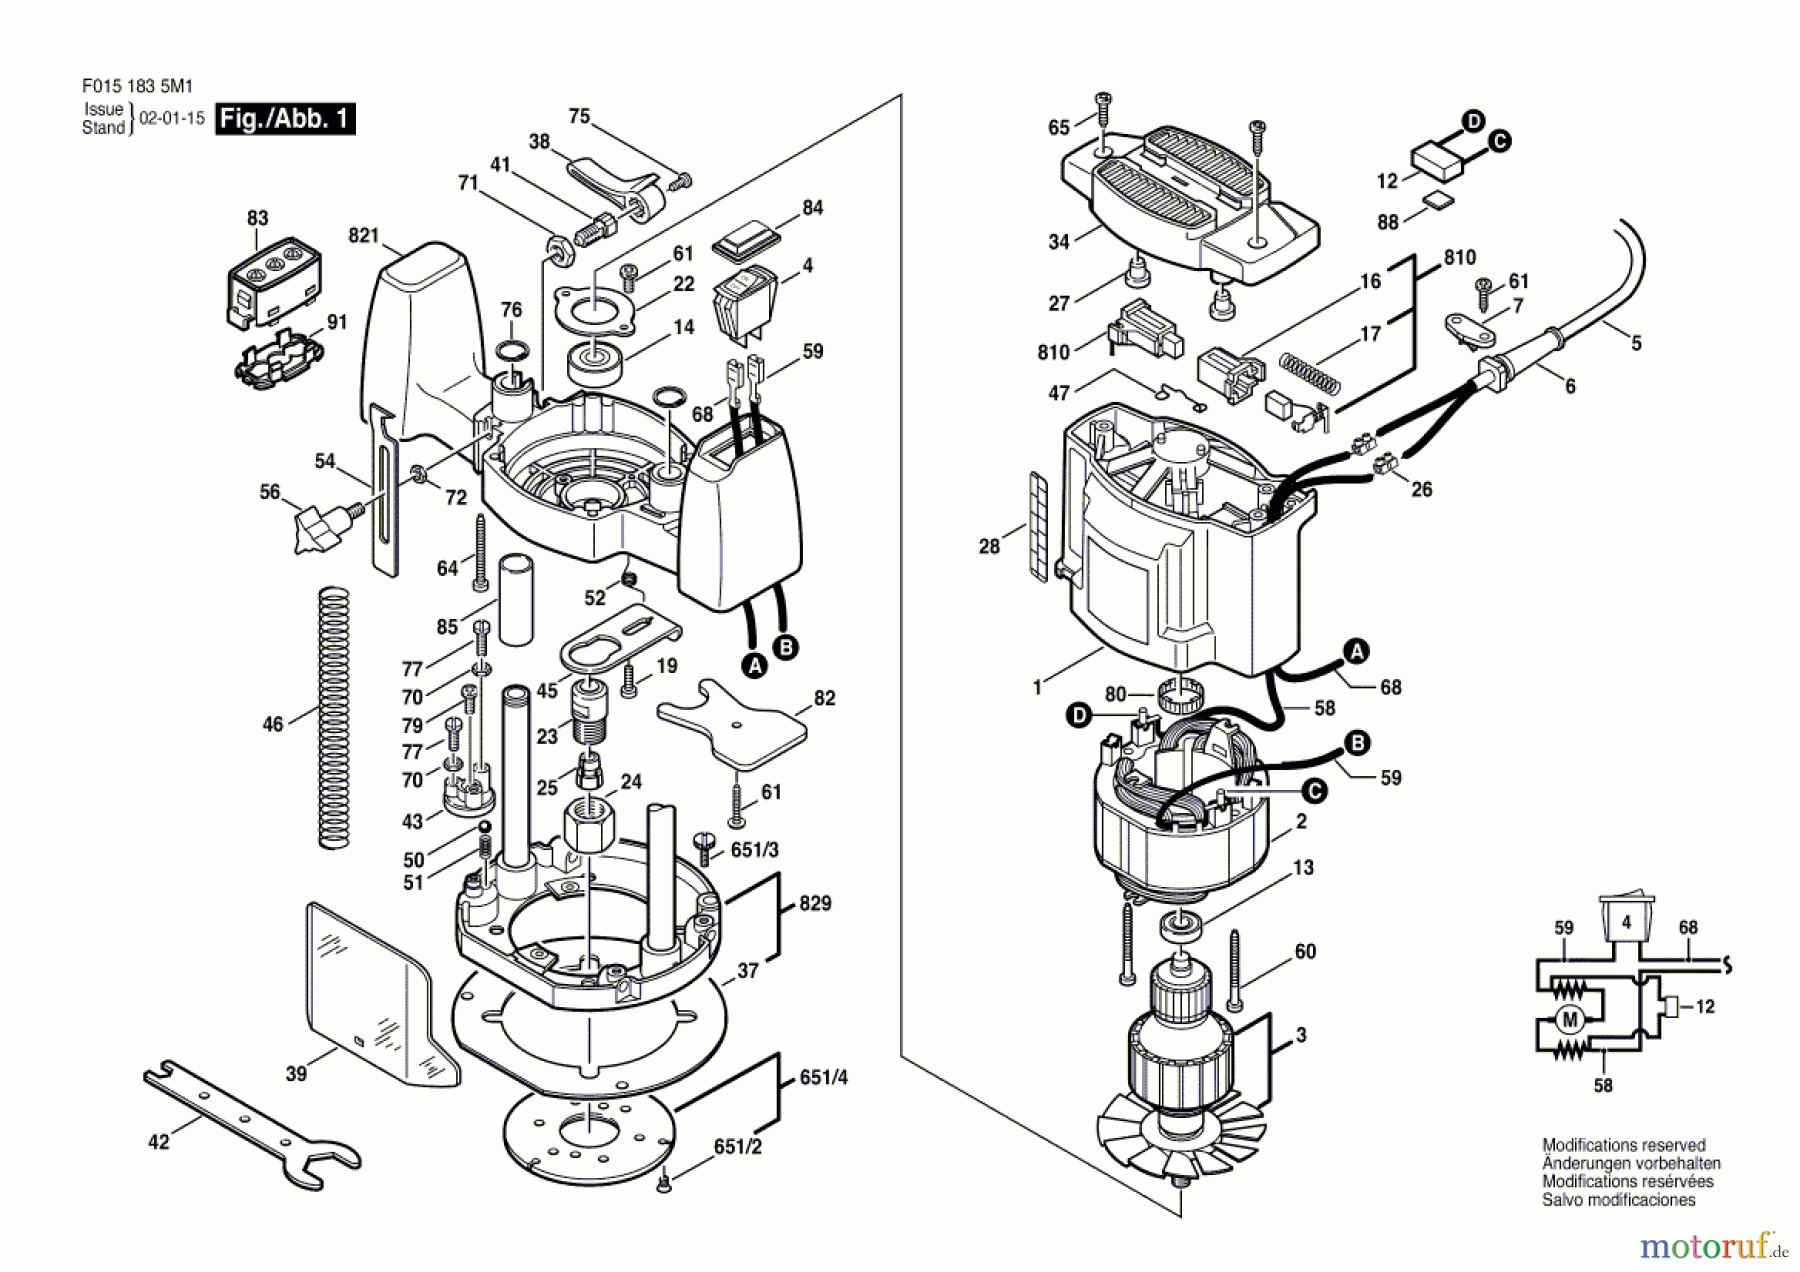  Bosch Werkzeug Oberfräse 1835U1 Seite 1